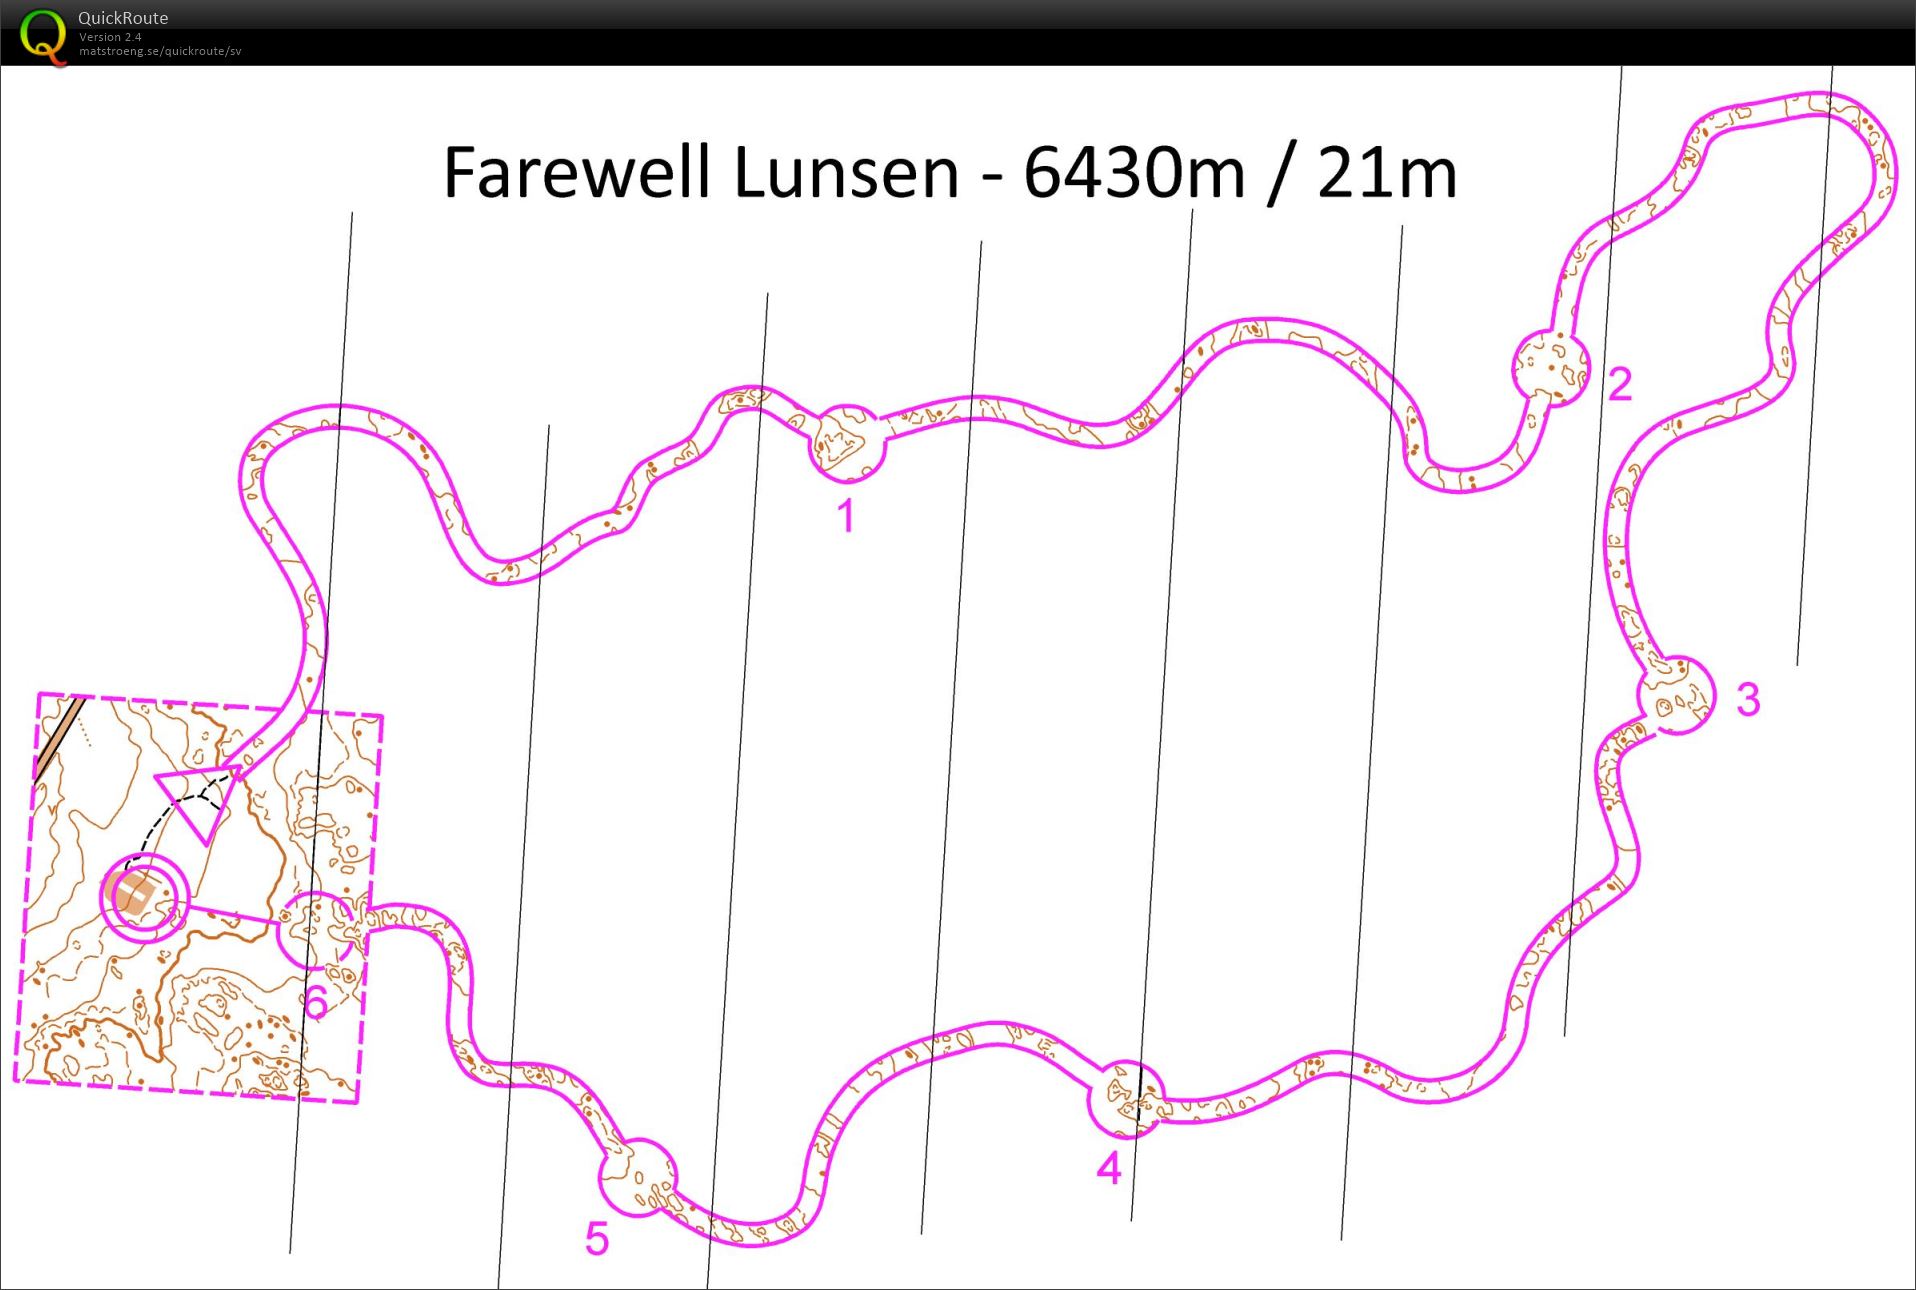 Farewell Lunsen (26/12/2015)